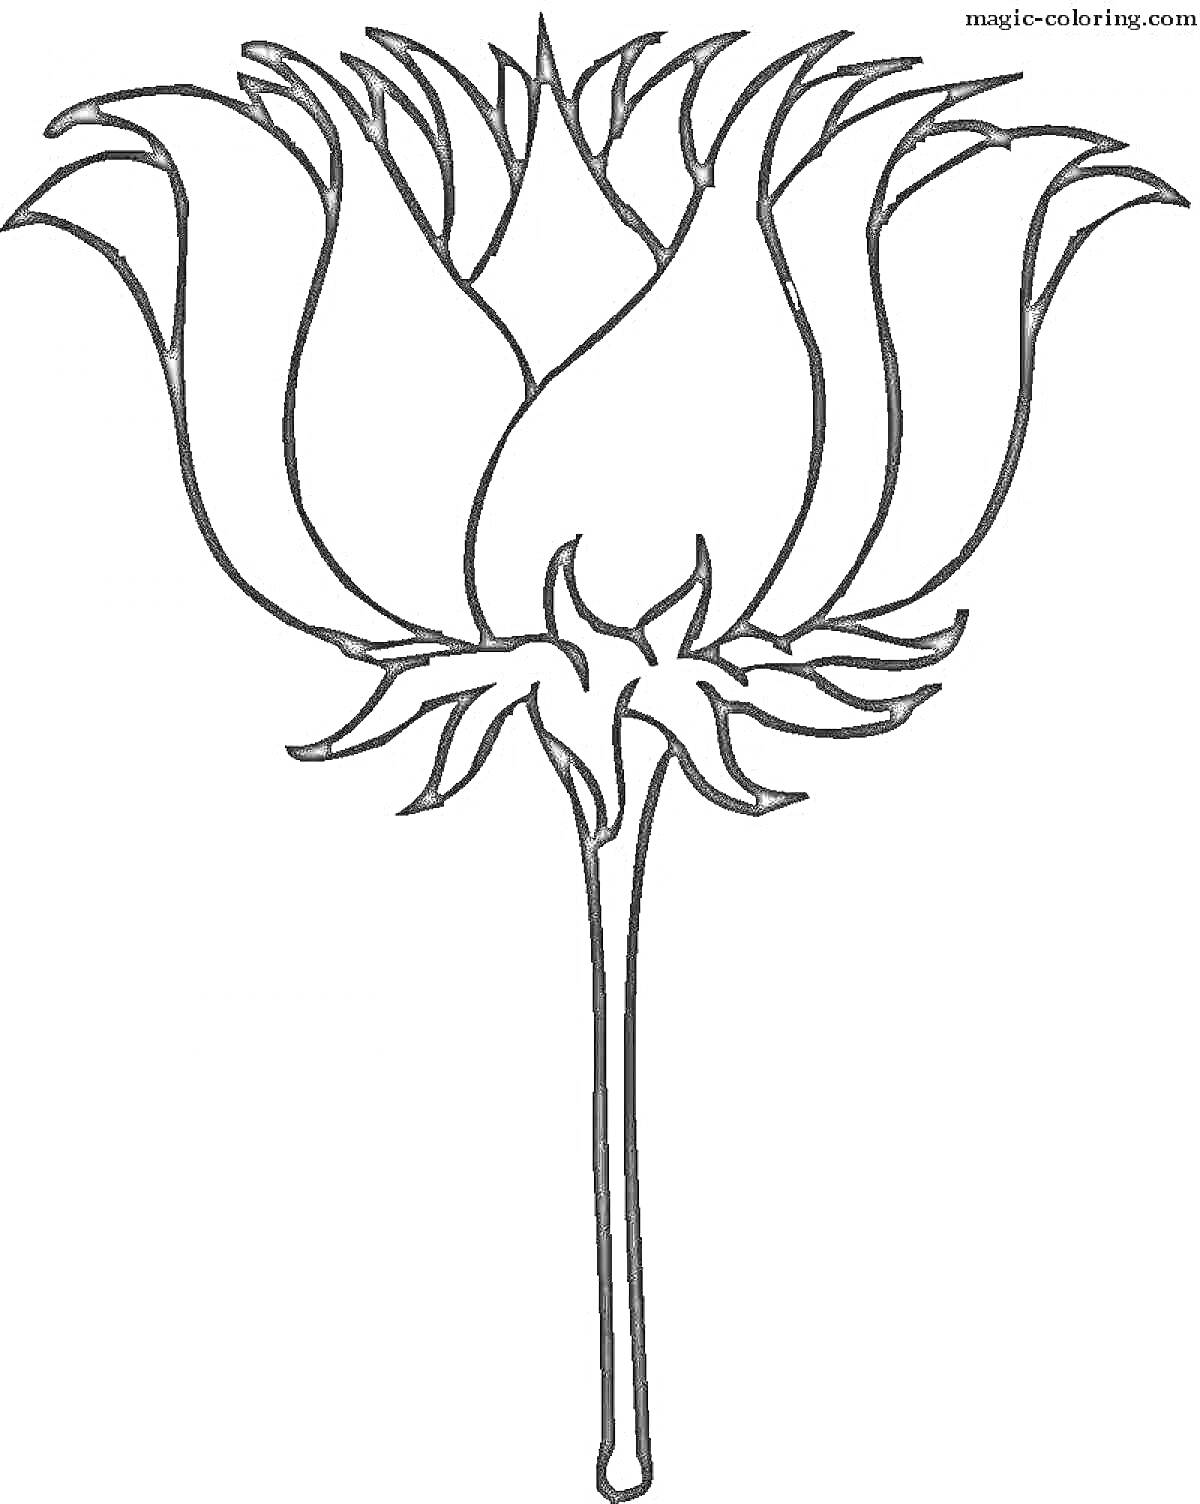 Раскраска Волшебный цветок с длинным стеблем и пышными лепестками